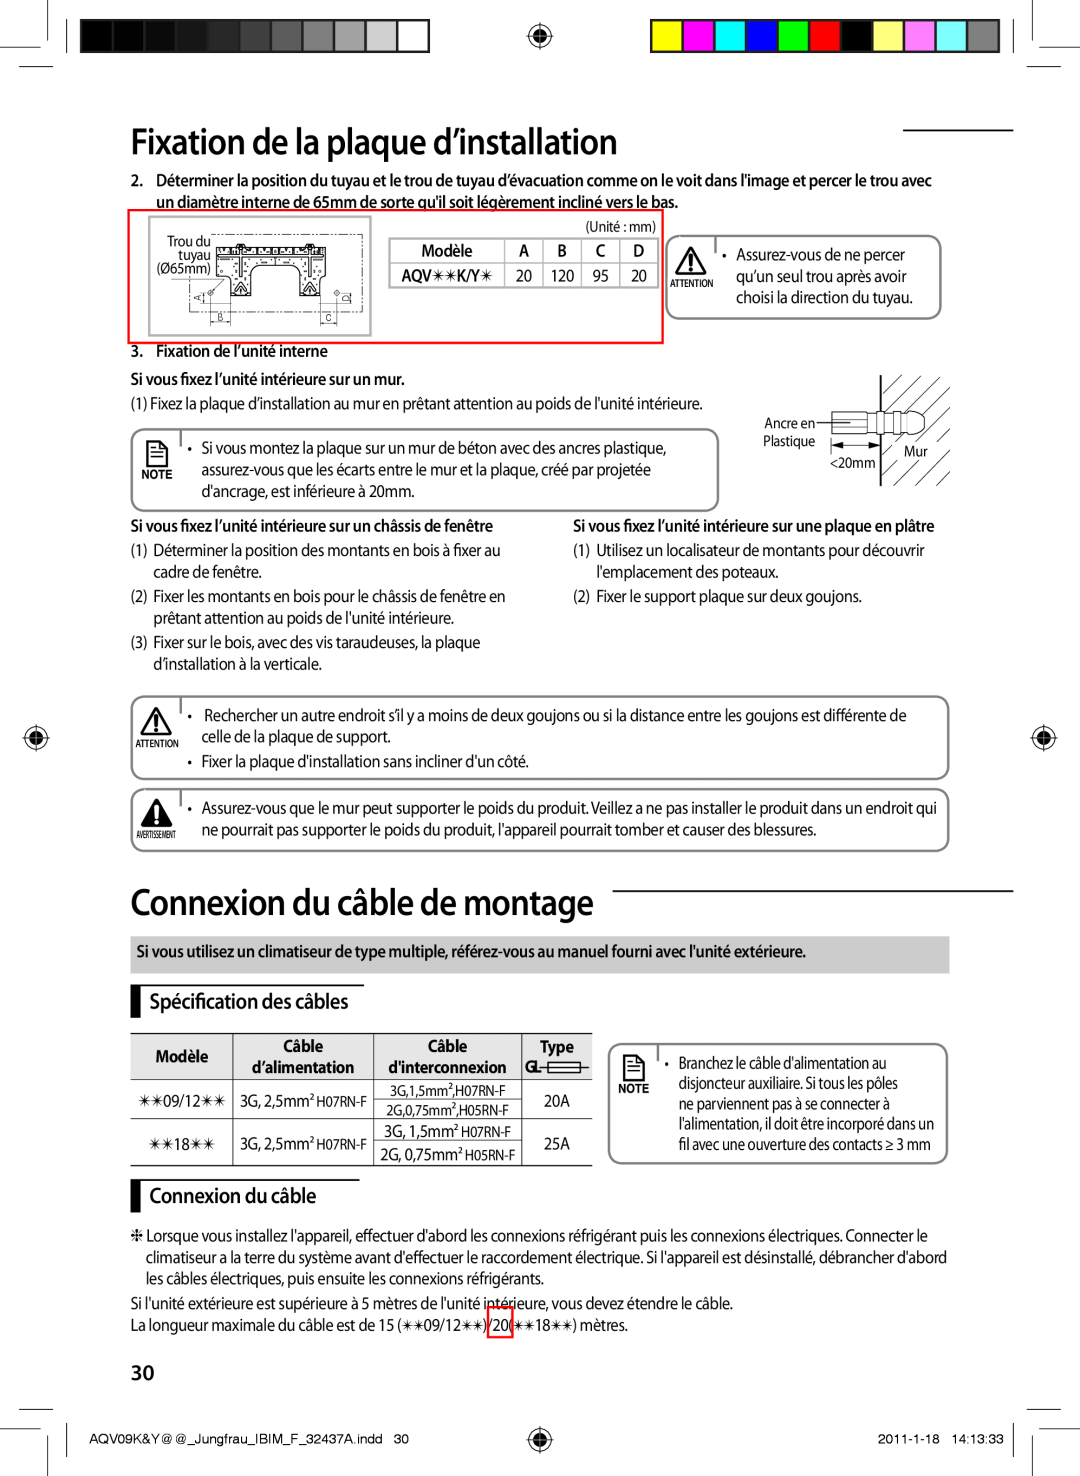 Samsung AQV09YWAN manual Connexion du câble de montage, Spécification des câbles, Fixation de l’unité interne, Modèle, 20mm 